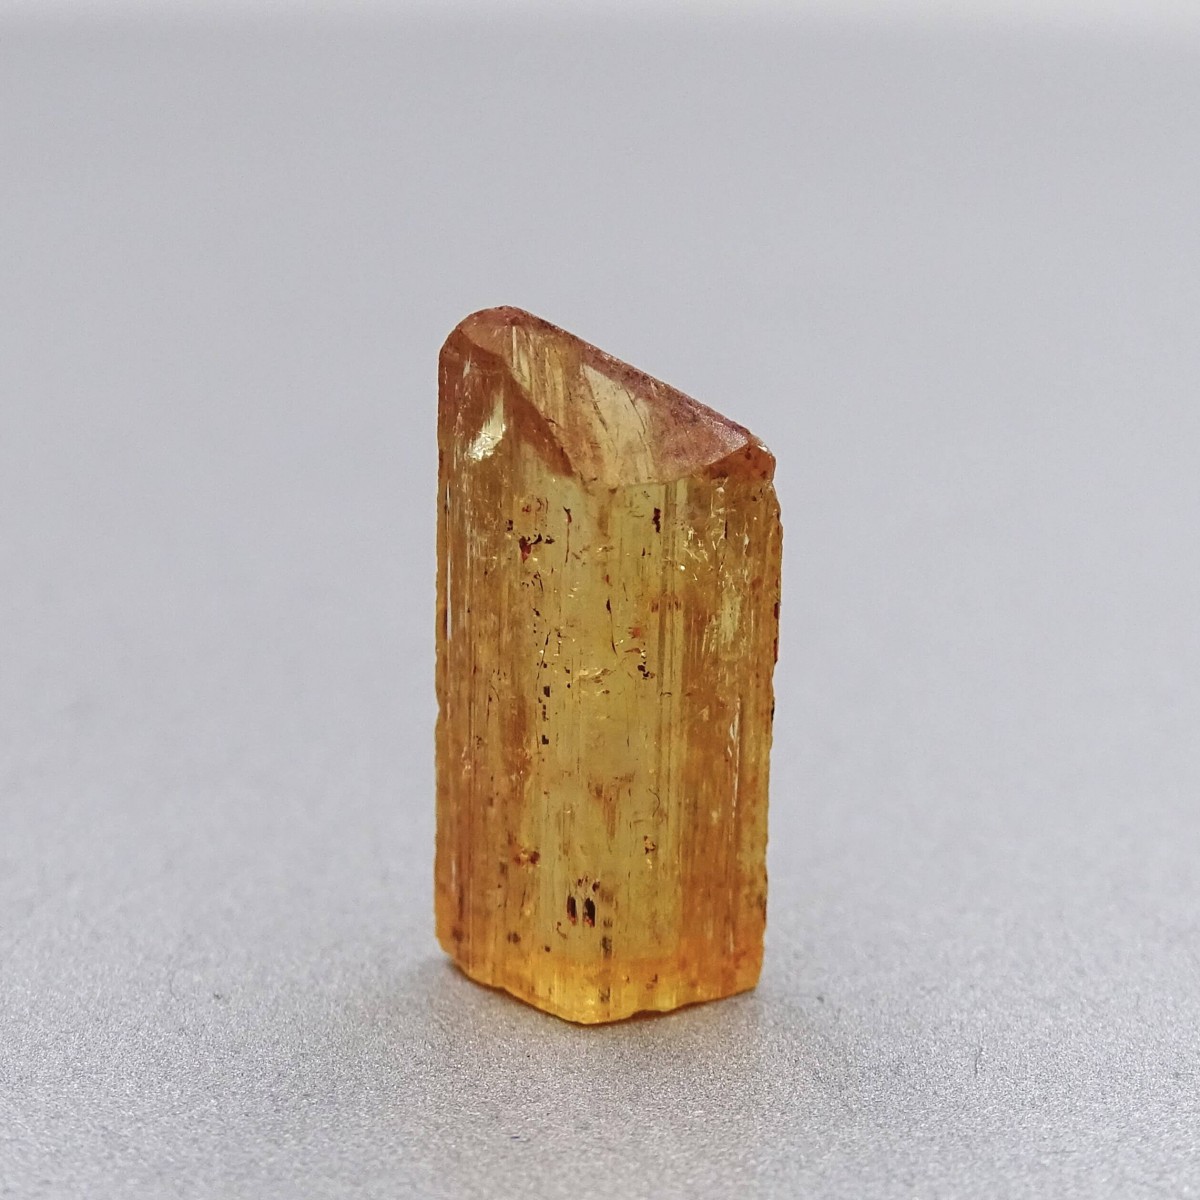 Topaz imperial přírodní krystal 2,4g, Brazílie